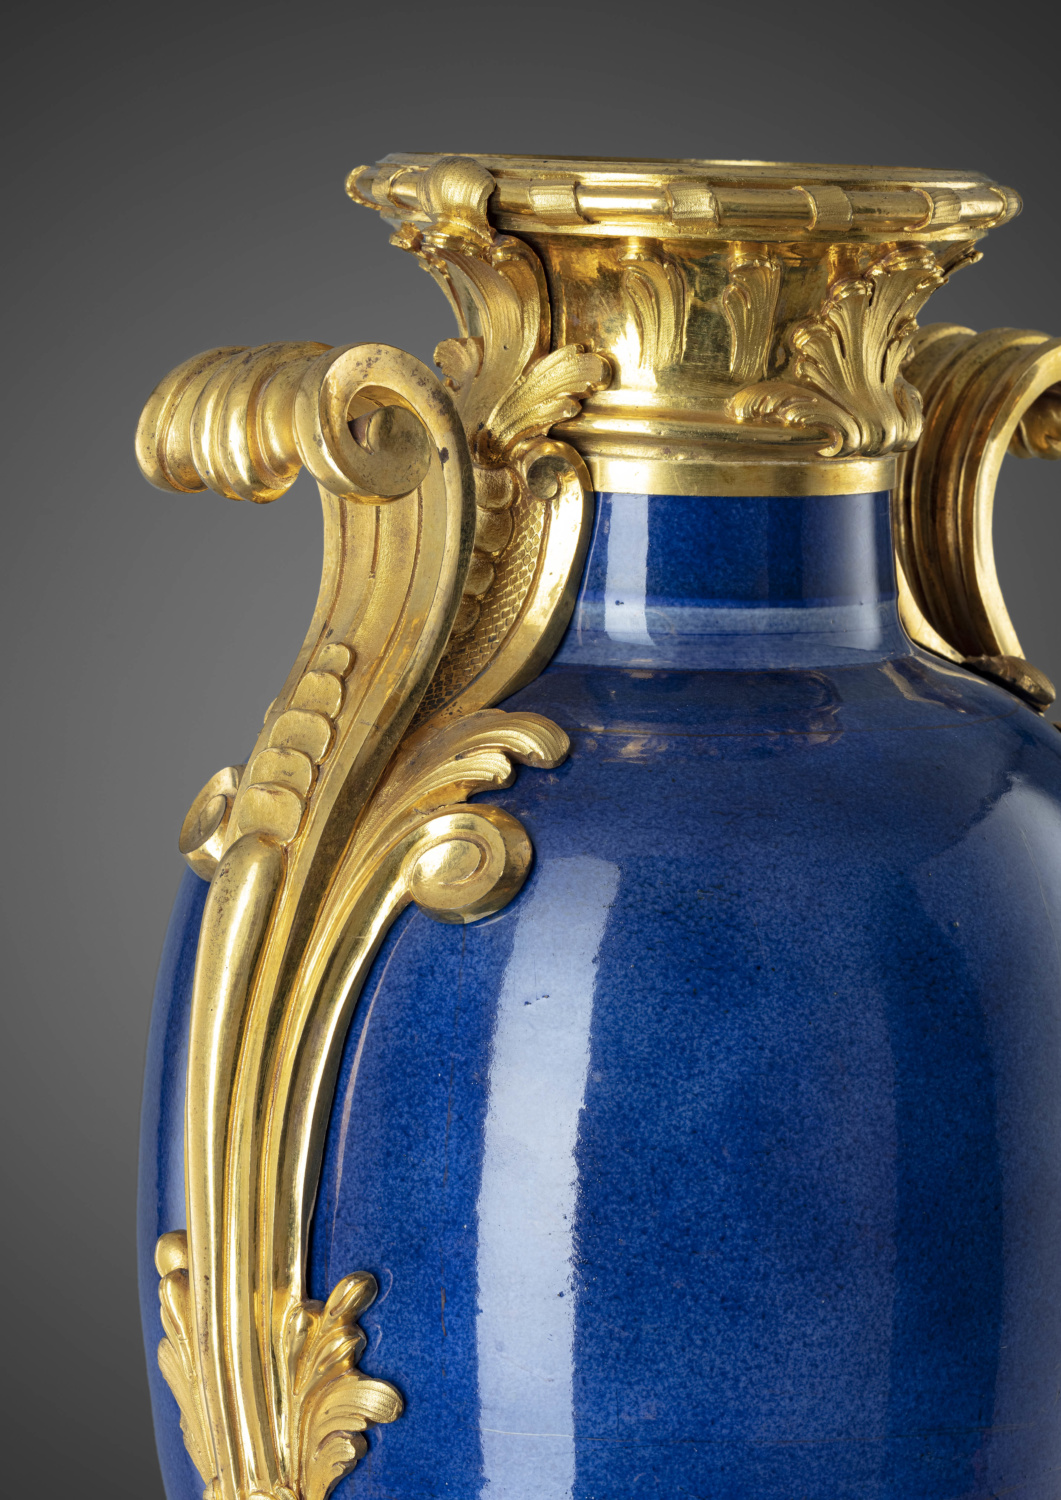 A large ormolu mounted gold powdered blue porcelain vase - Galerie Kugel